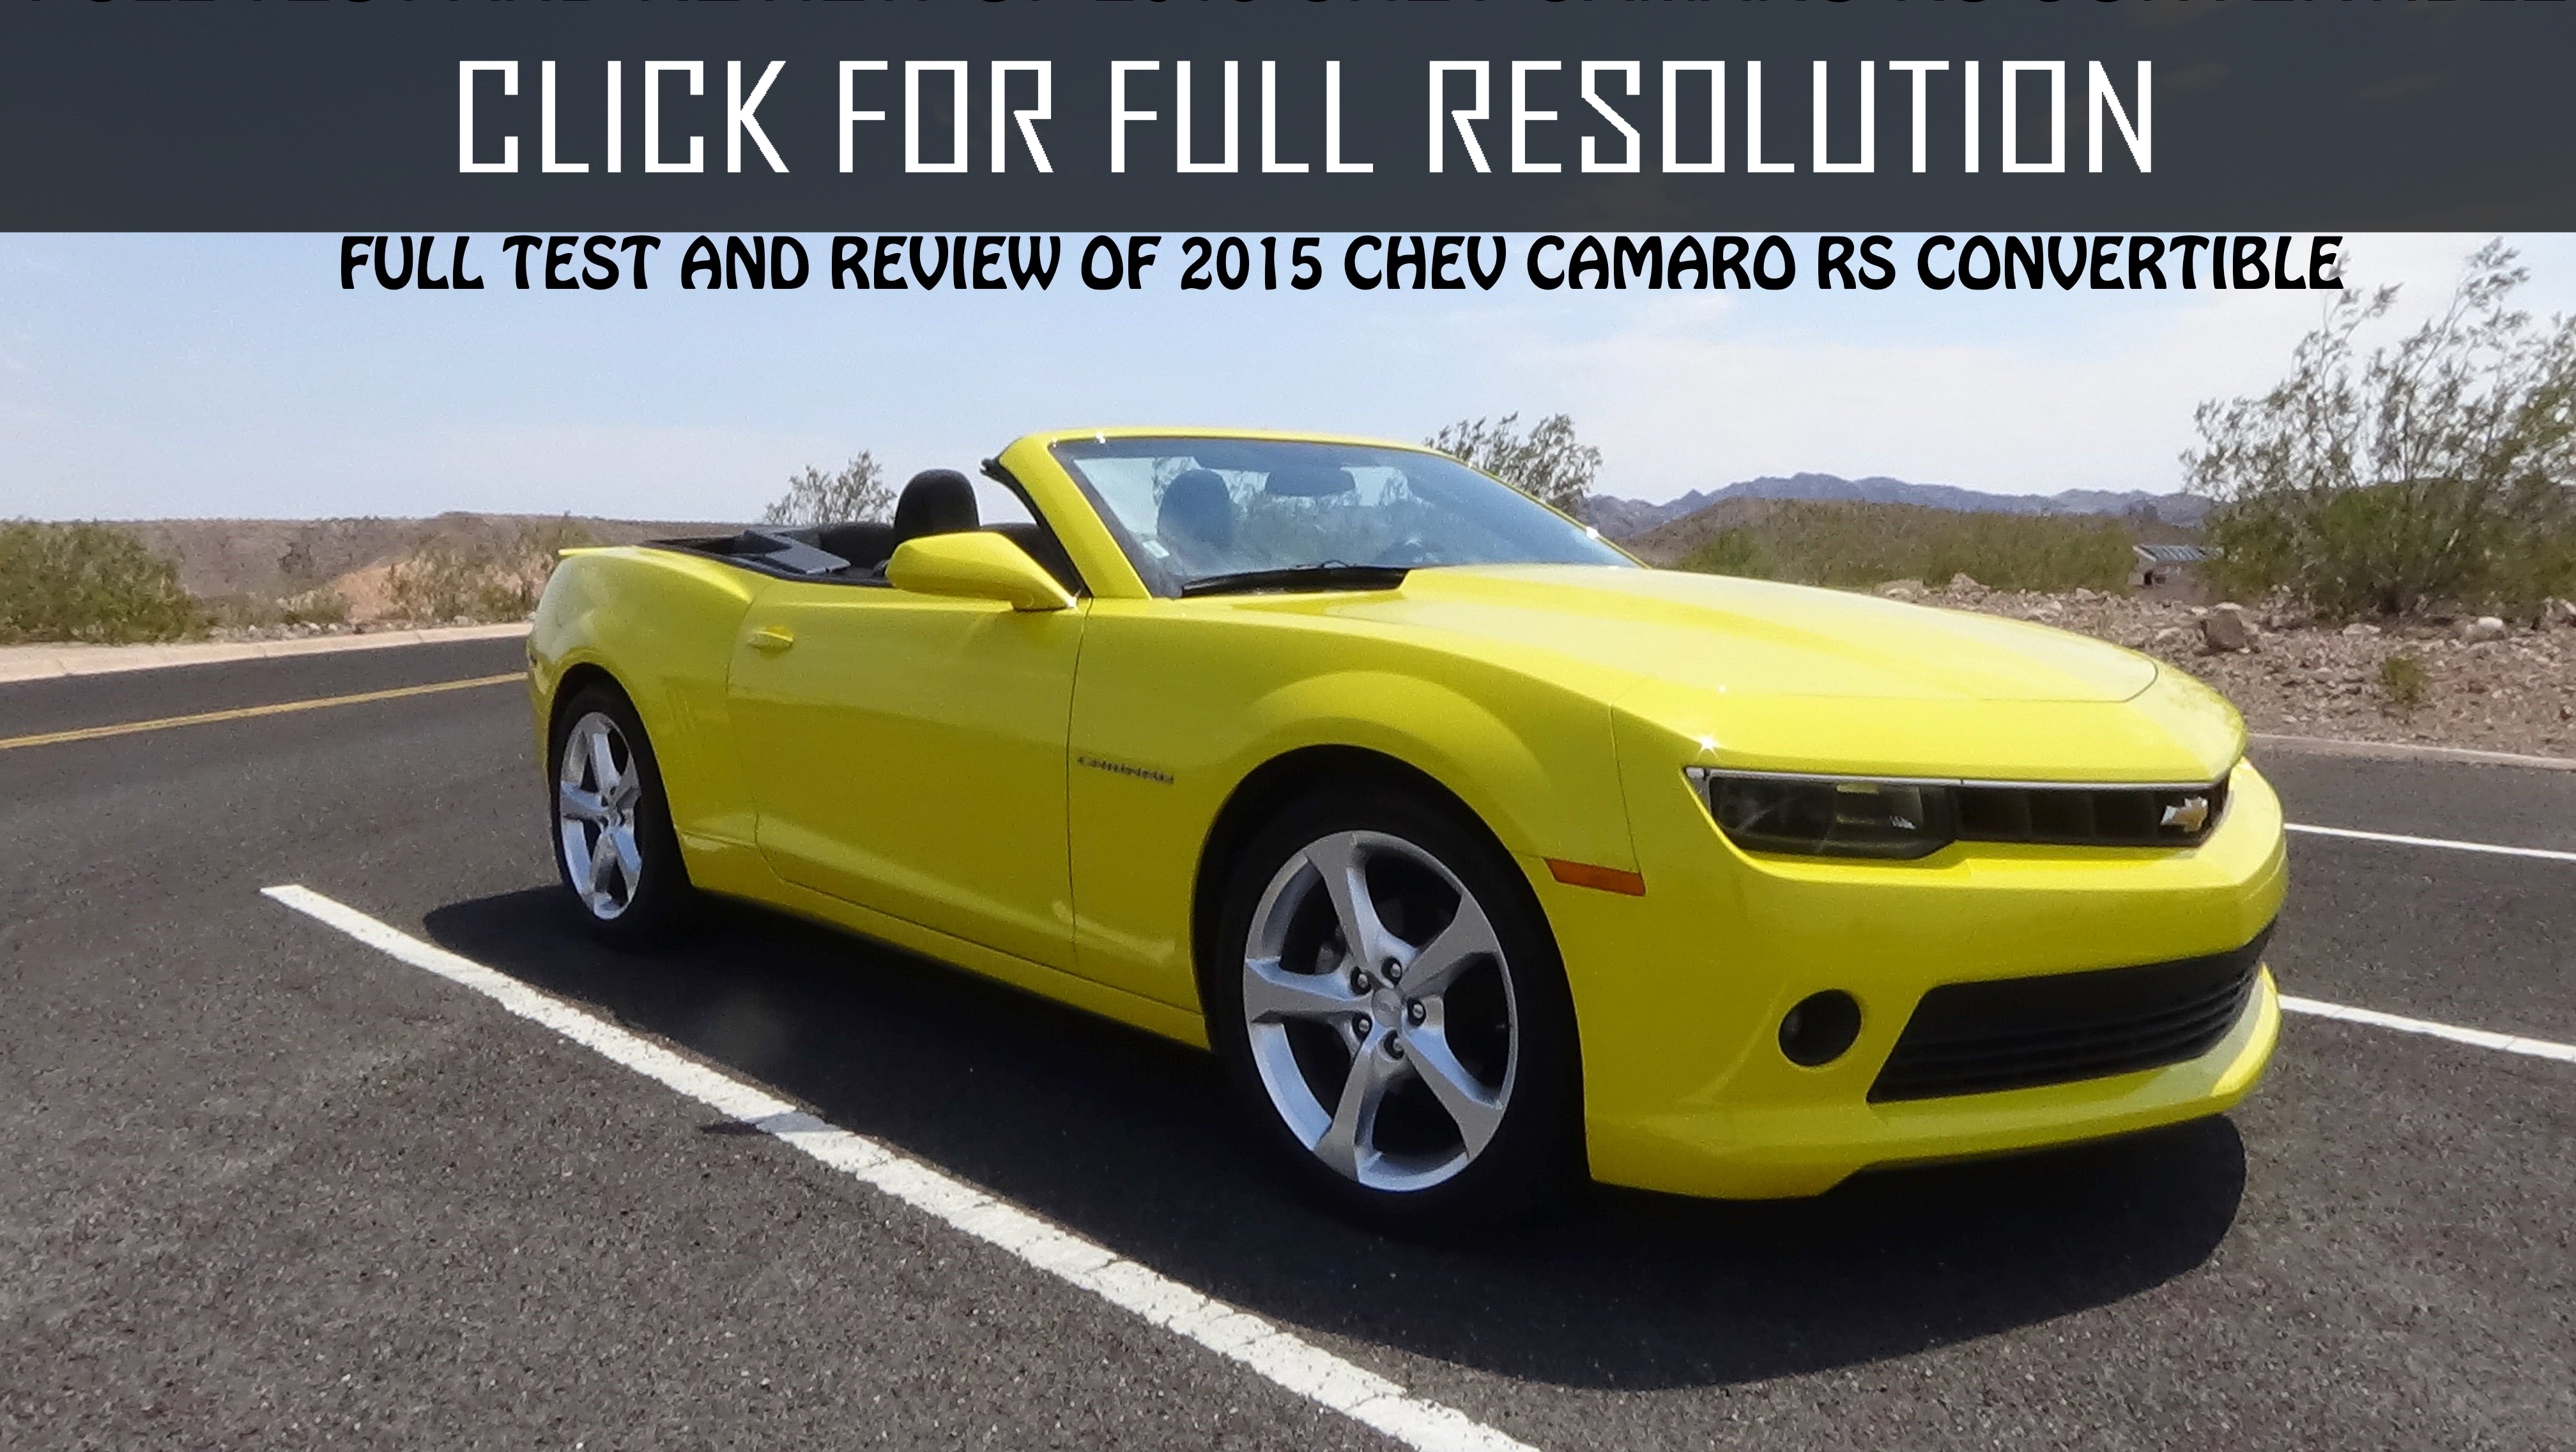 Chevrolet Camaro Convertible 2015